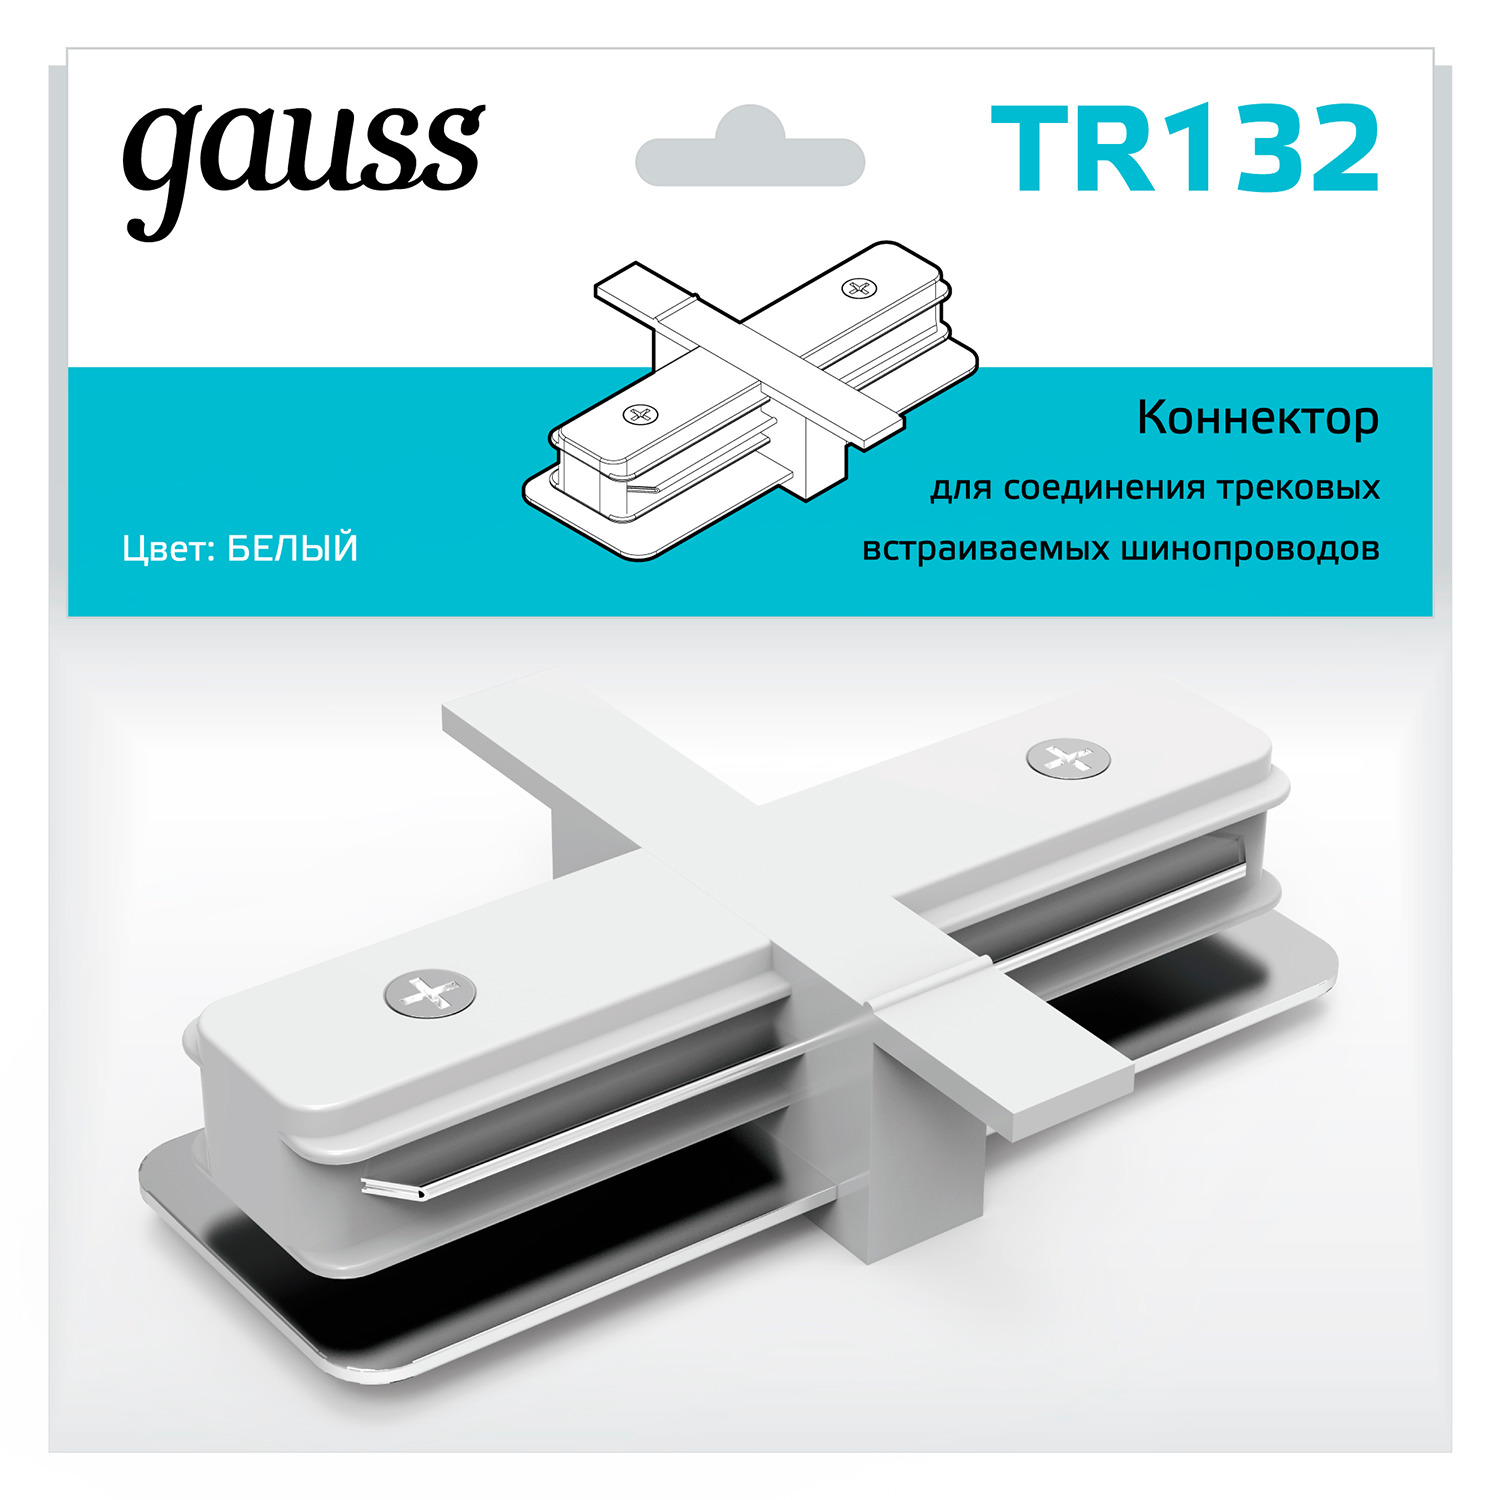 Коннектор Gauss для встраиваемых трековых шинопроводов прямой (I) белый коннектор gauss для встраиваемых трековых шинопроводов гибкий i